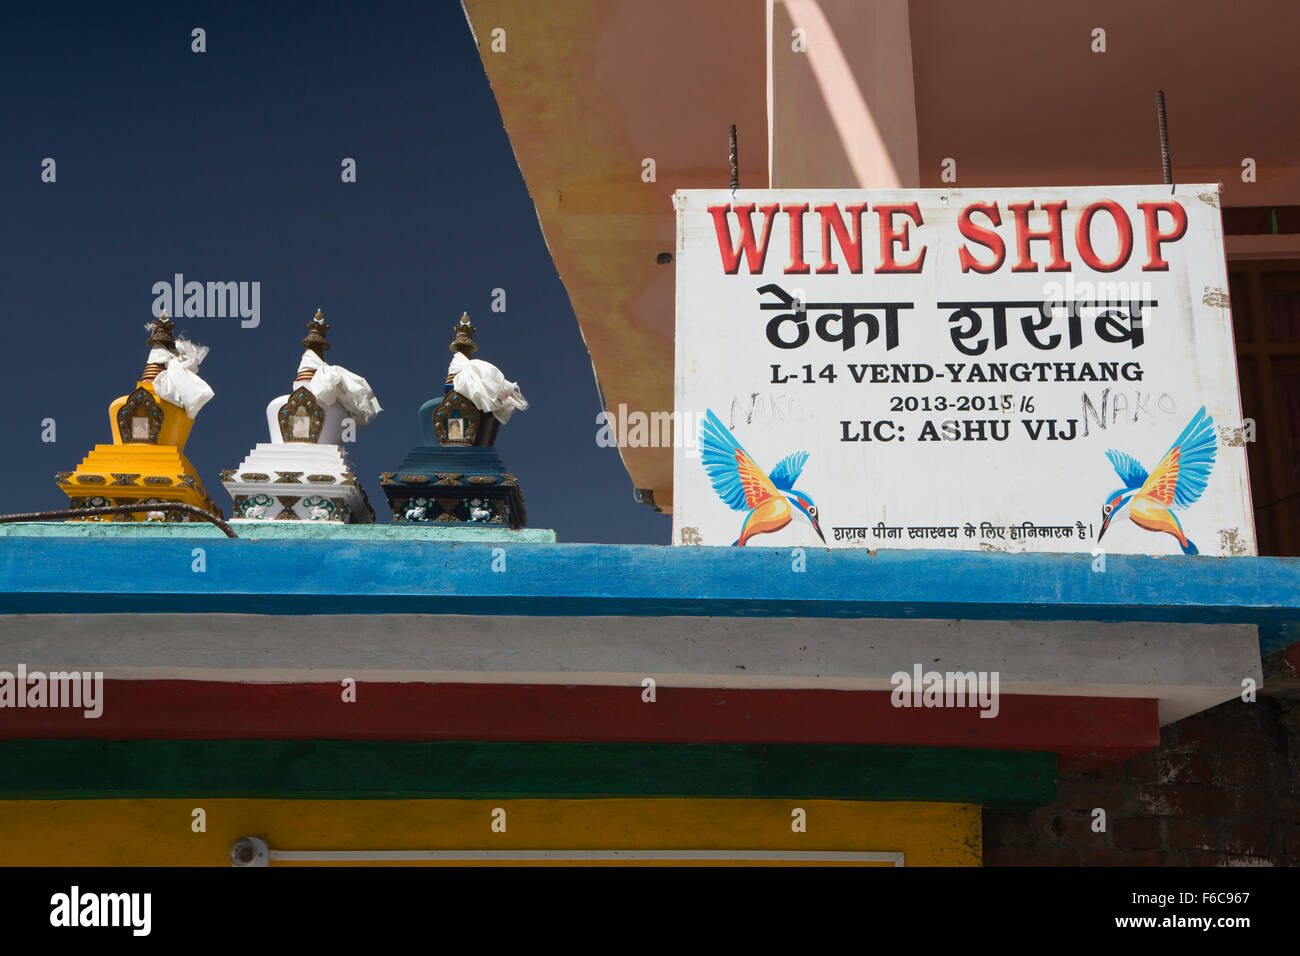 Indien, Himachal Pradesh, Yangthang, Wein shop Zeichen, Kingfisher Bier Werbung Stockfoto